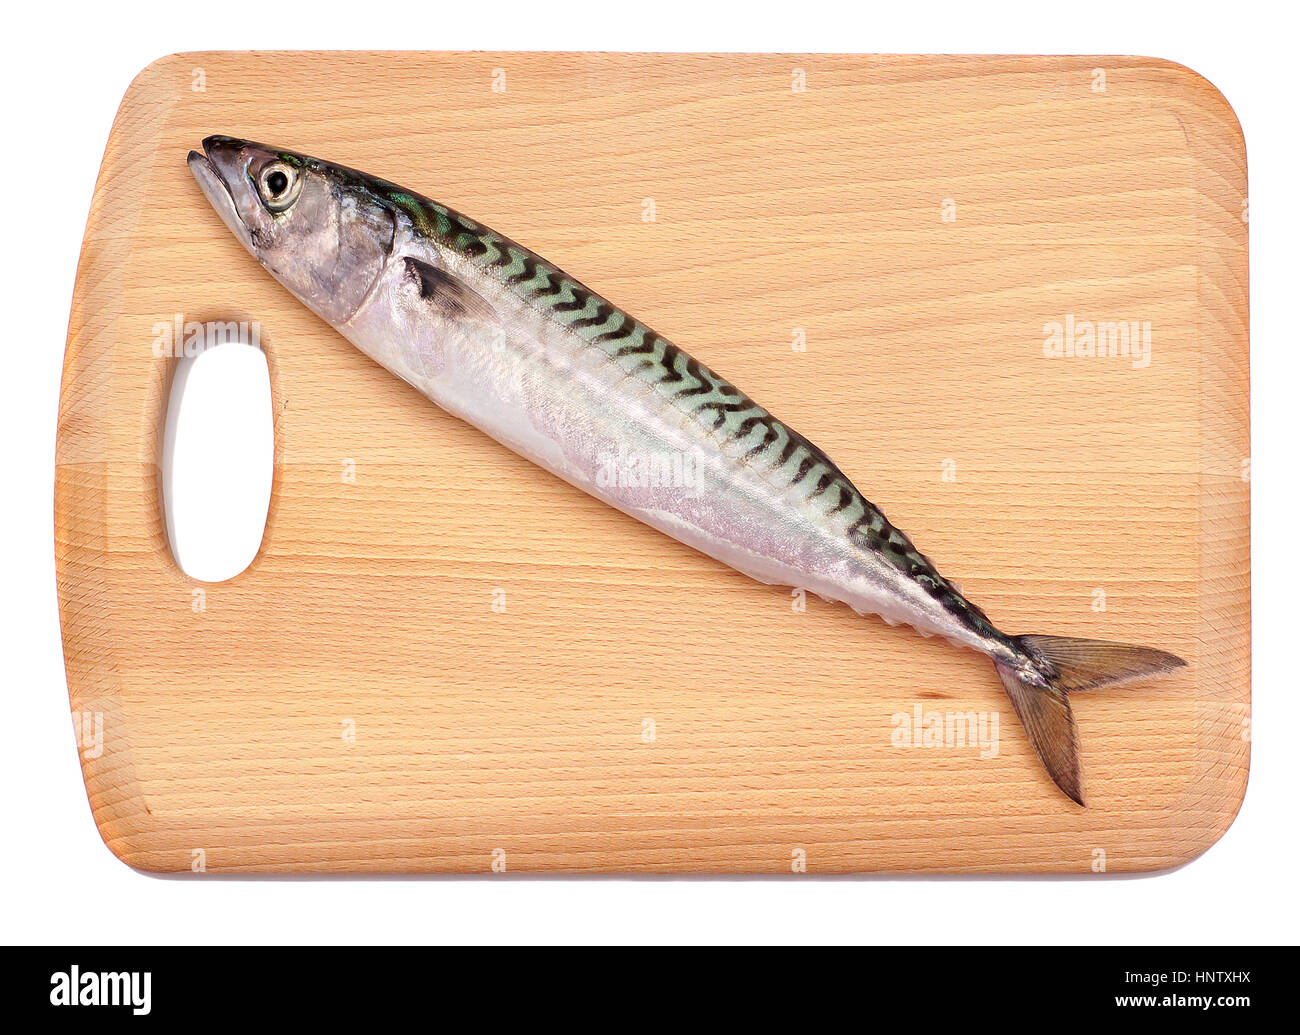 Frische Makrele Fisch Verlegung auf hölzernen Hackstock Brett, Isolated on White Background Stockfoto